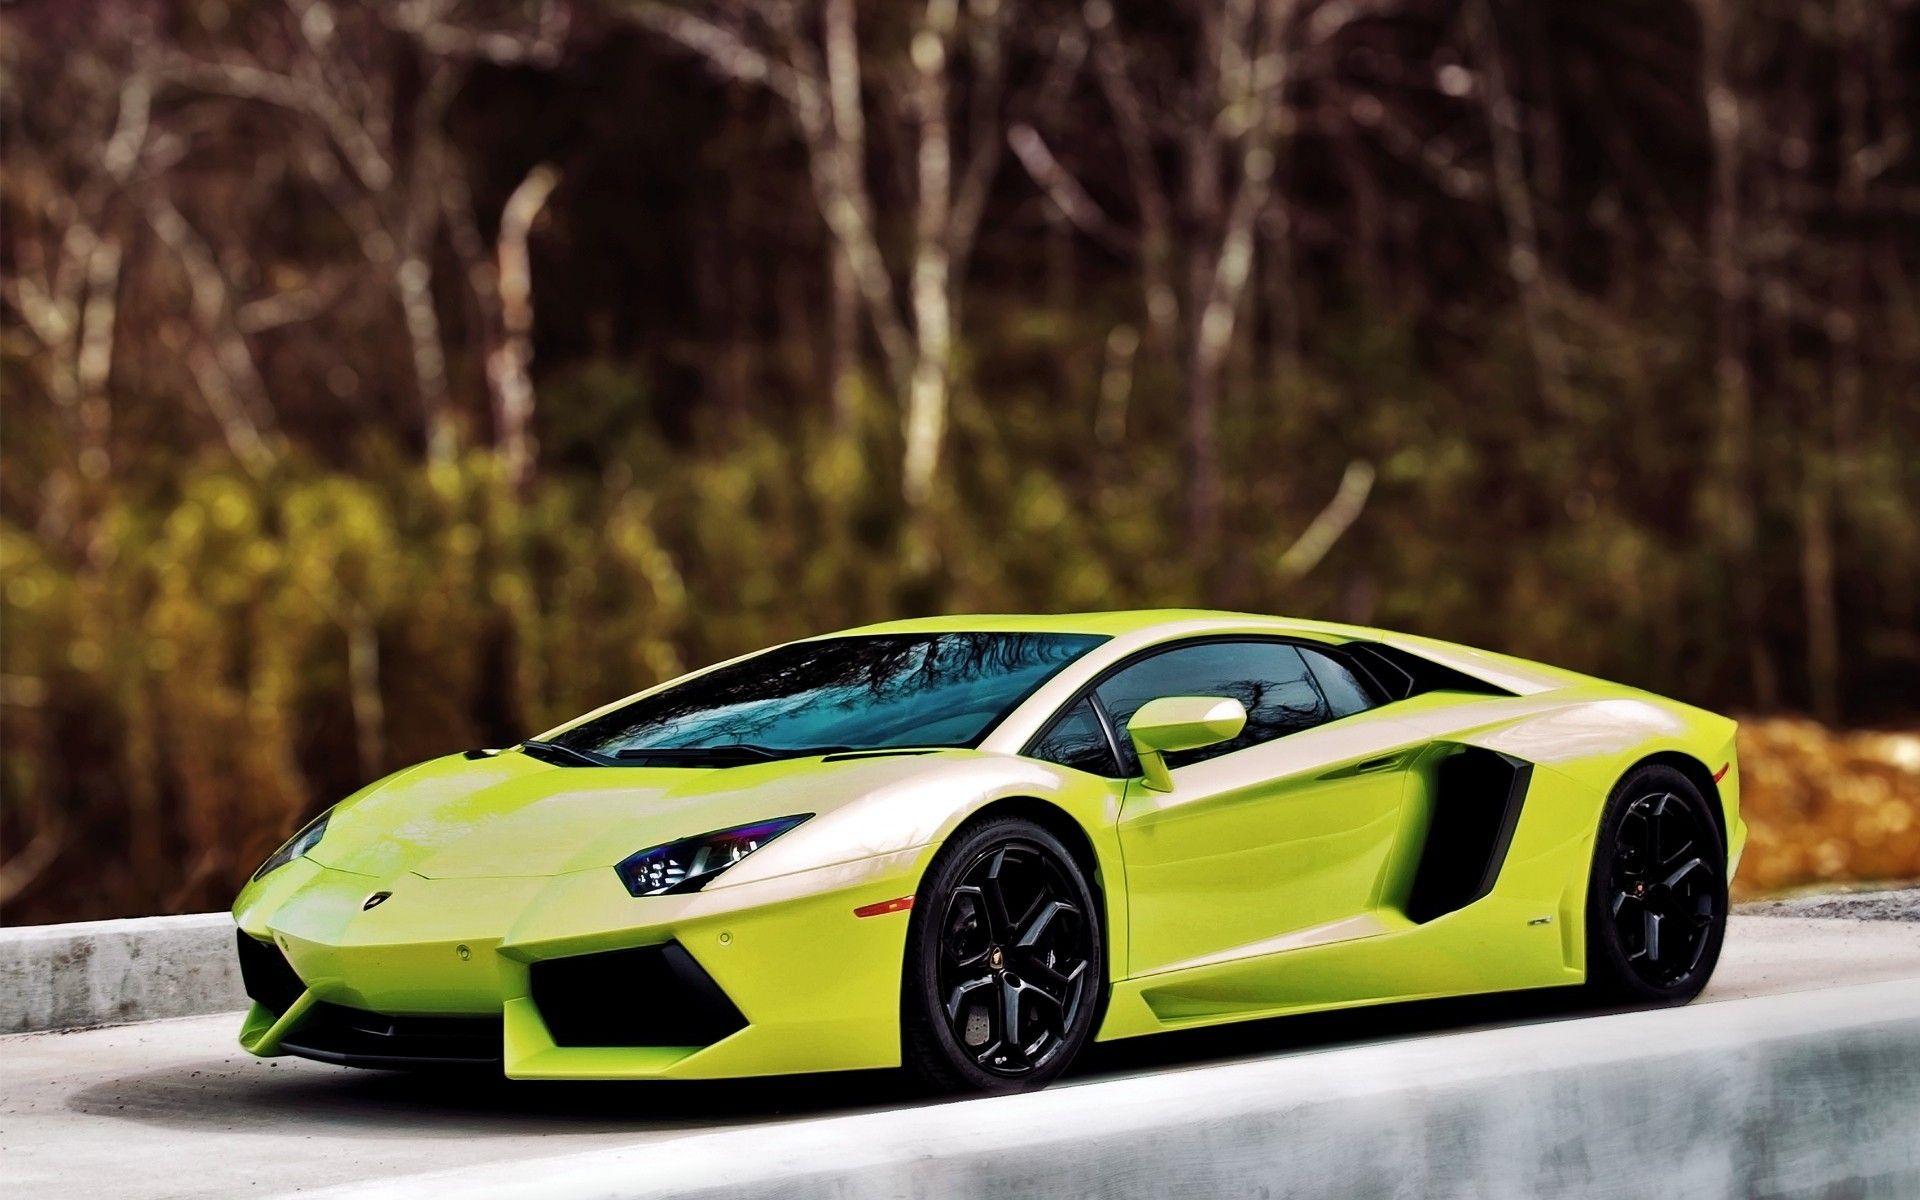 Lime Green Lamborghini Wallpapers - Top Free Lime Green Lamborghini ...